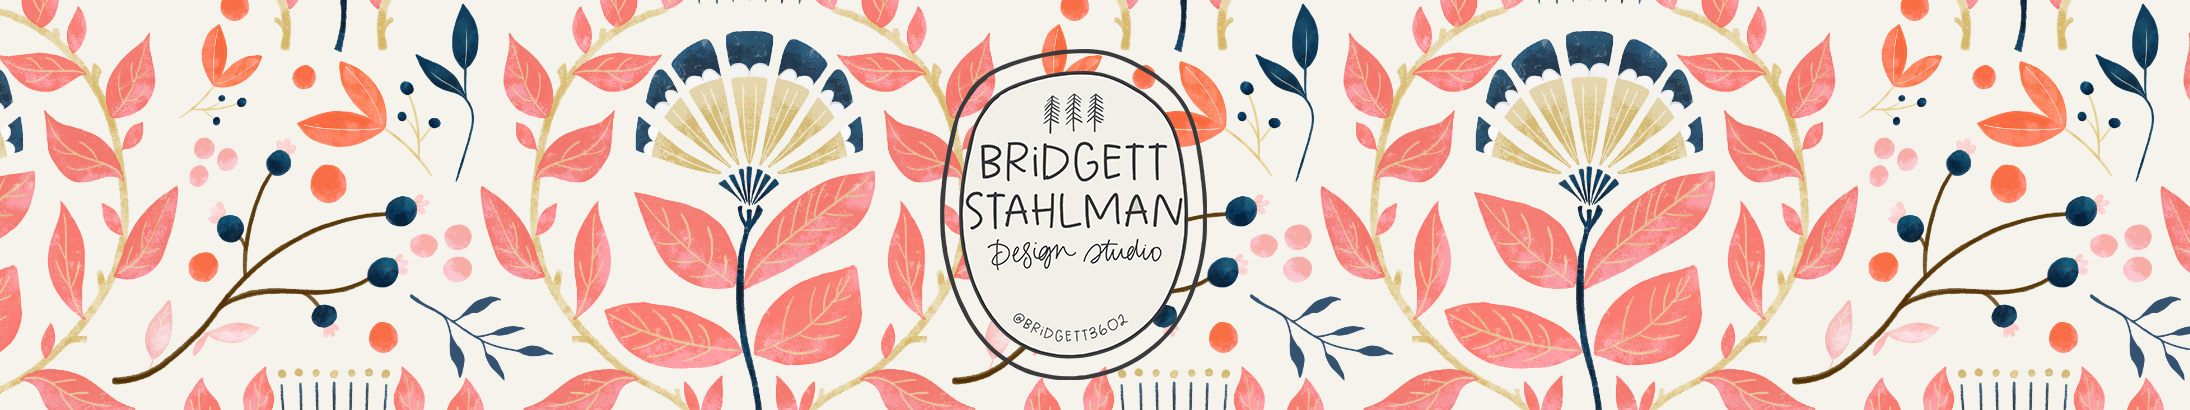 Bridgett Stahlmans profilbanner